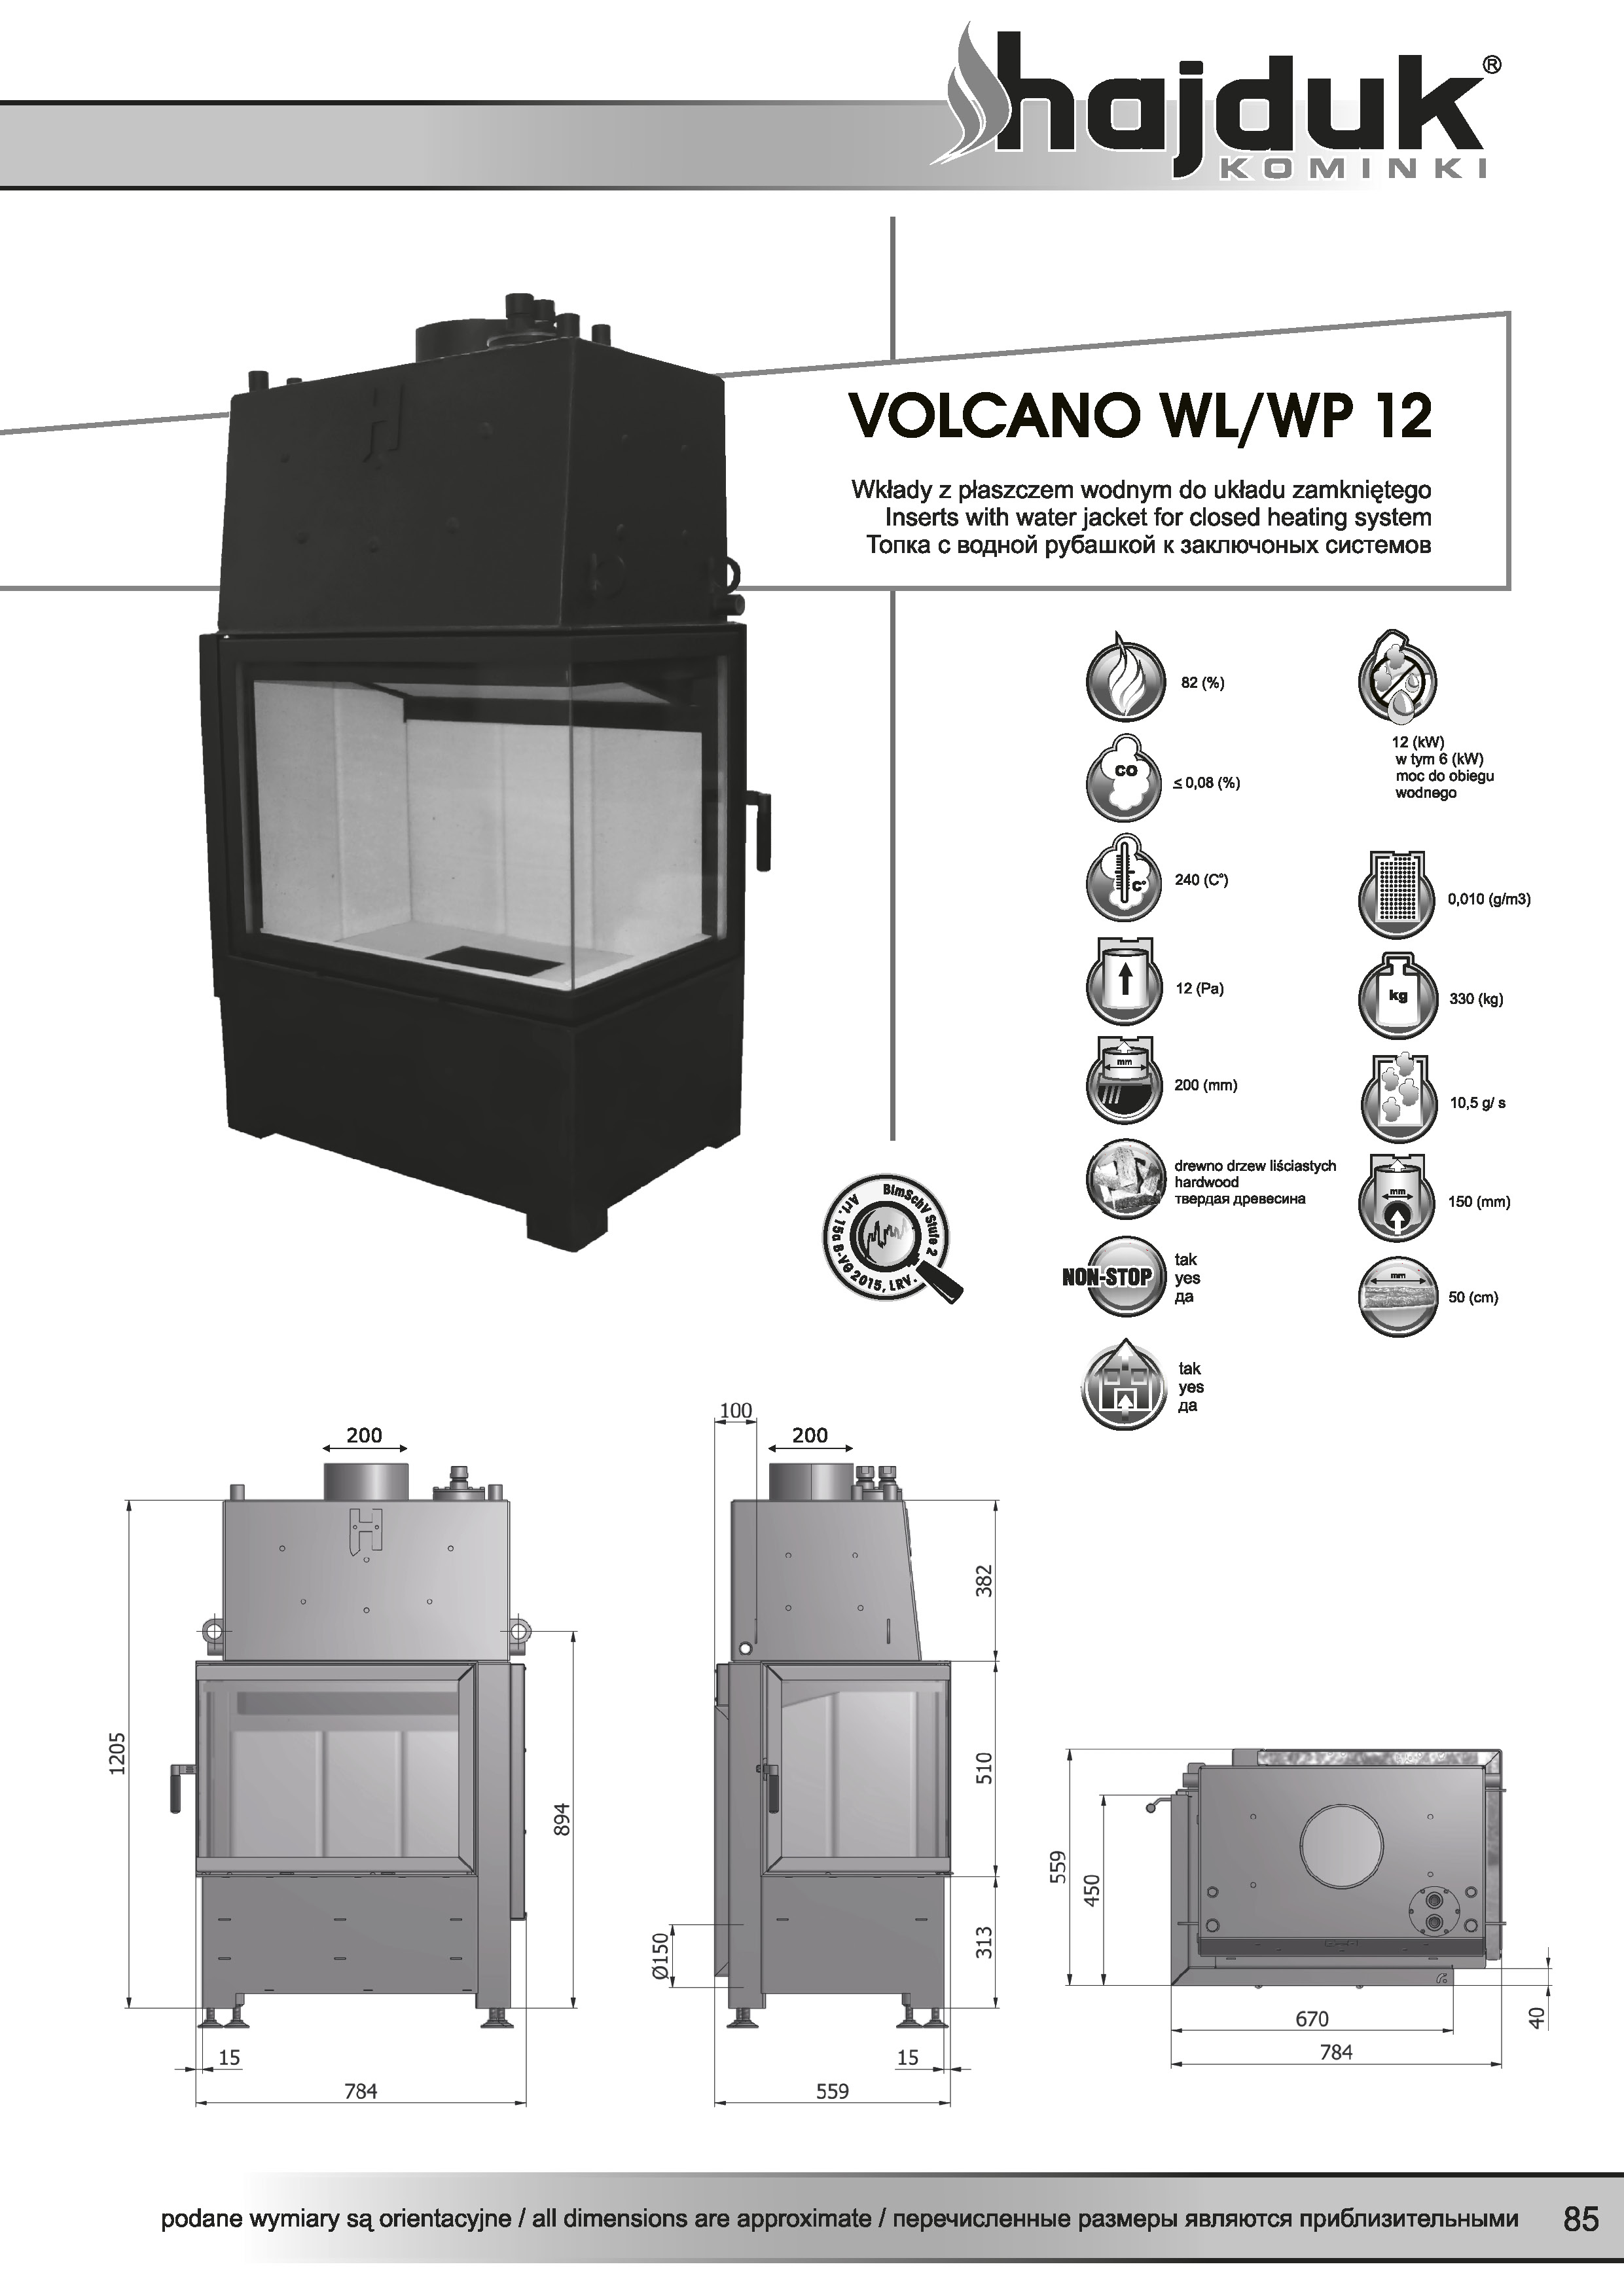 Volcano%20WL%20WP%20 %2012%20 %20karta%20techniczna - Krbová vložka Hajduk Volcano WL 12